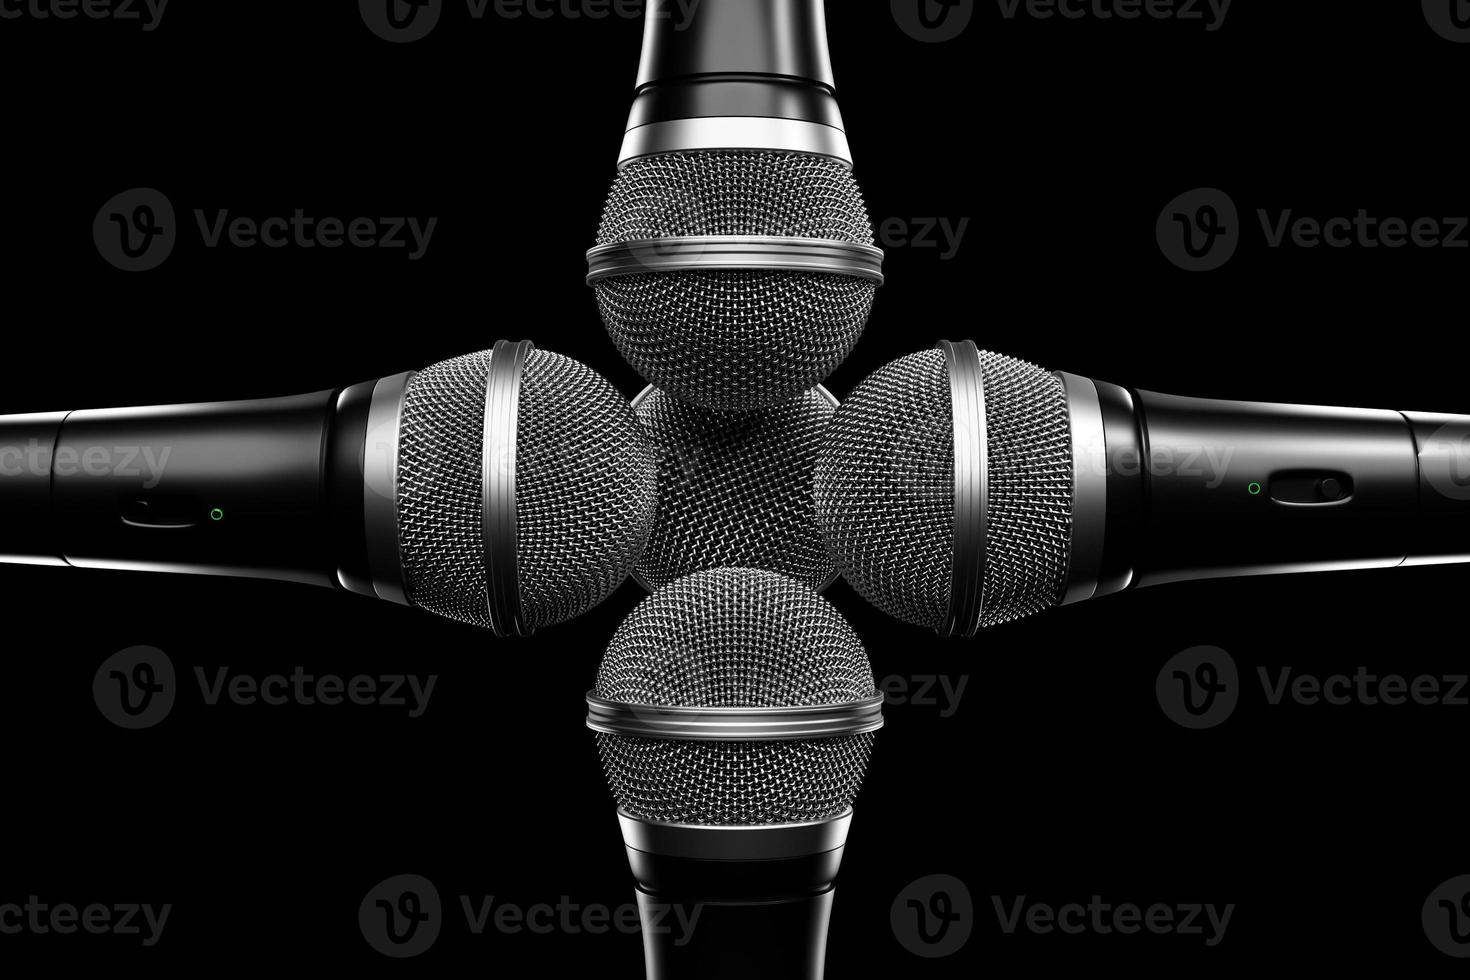 microfoons, rond vormmodel op zwarte achtergrond, realistisch 3D-model. muziekprijs, karaoke, radio en geluidsapparatuur voor opnamestudio's foto